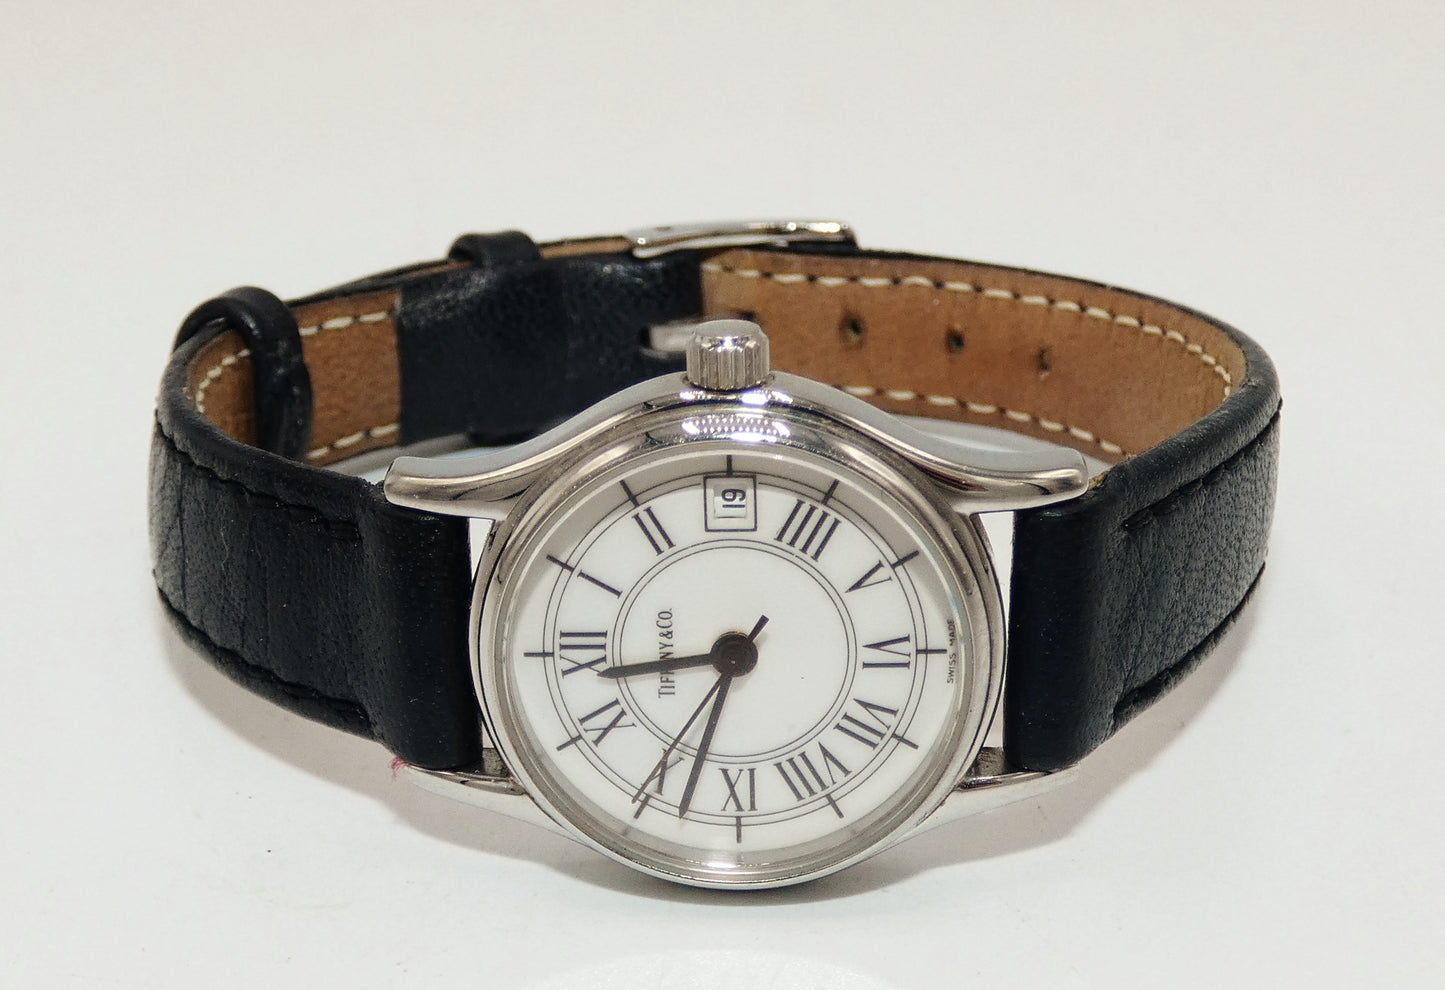 Tiffany & Co. Wristwatch with Date